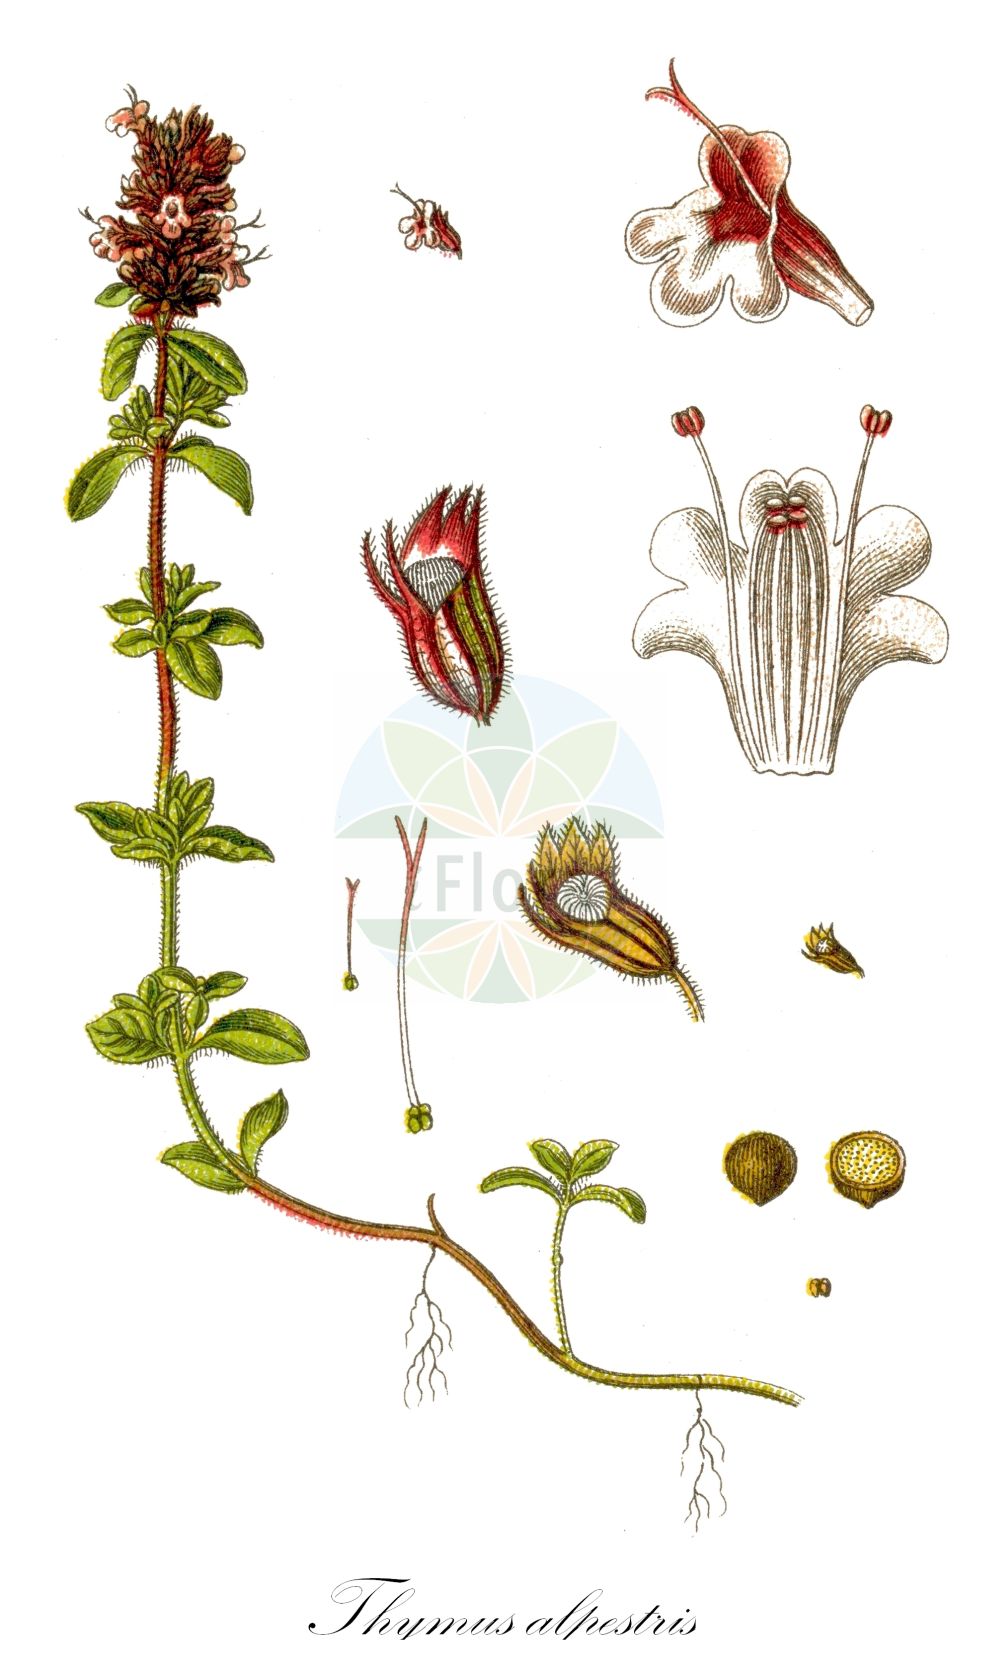 Historische Abbildung von Thymus alpestris (Hochgebirgs-Thymian - Wild Thyme). Das Bild zeigt Blatt, Bluete, Frucht und Same. ---- Historical Drawing of Thymus alpestris (Hochgebirgs-Thymian - Wild Thyme). The image is showing leaf, flower, fruit and seed.(Thymus alpestris,Hochgebirgs-Thymian,Wild Thyme,Thymus alpestris,Thymus subalpestris,Hochgebirgs-Thymian,Wild Thyme,Alpine Thyme,Thymus,Thymian,Thyme,Lamiaceae,Lippenblütengewächse,Nettle family,Blatt,Bluete,Frucht,Same,leaf,flower,fruit,seed,Sturm (1796f))